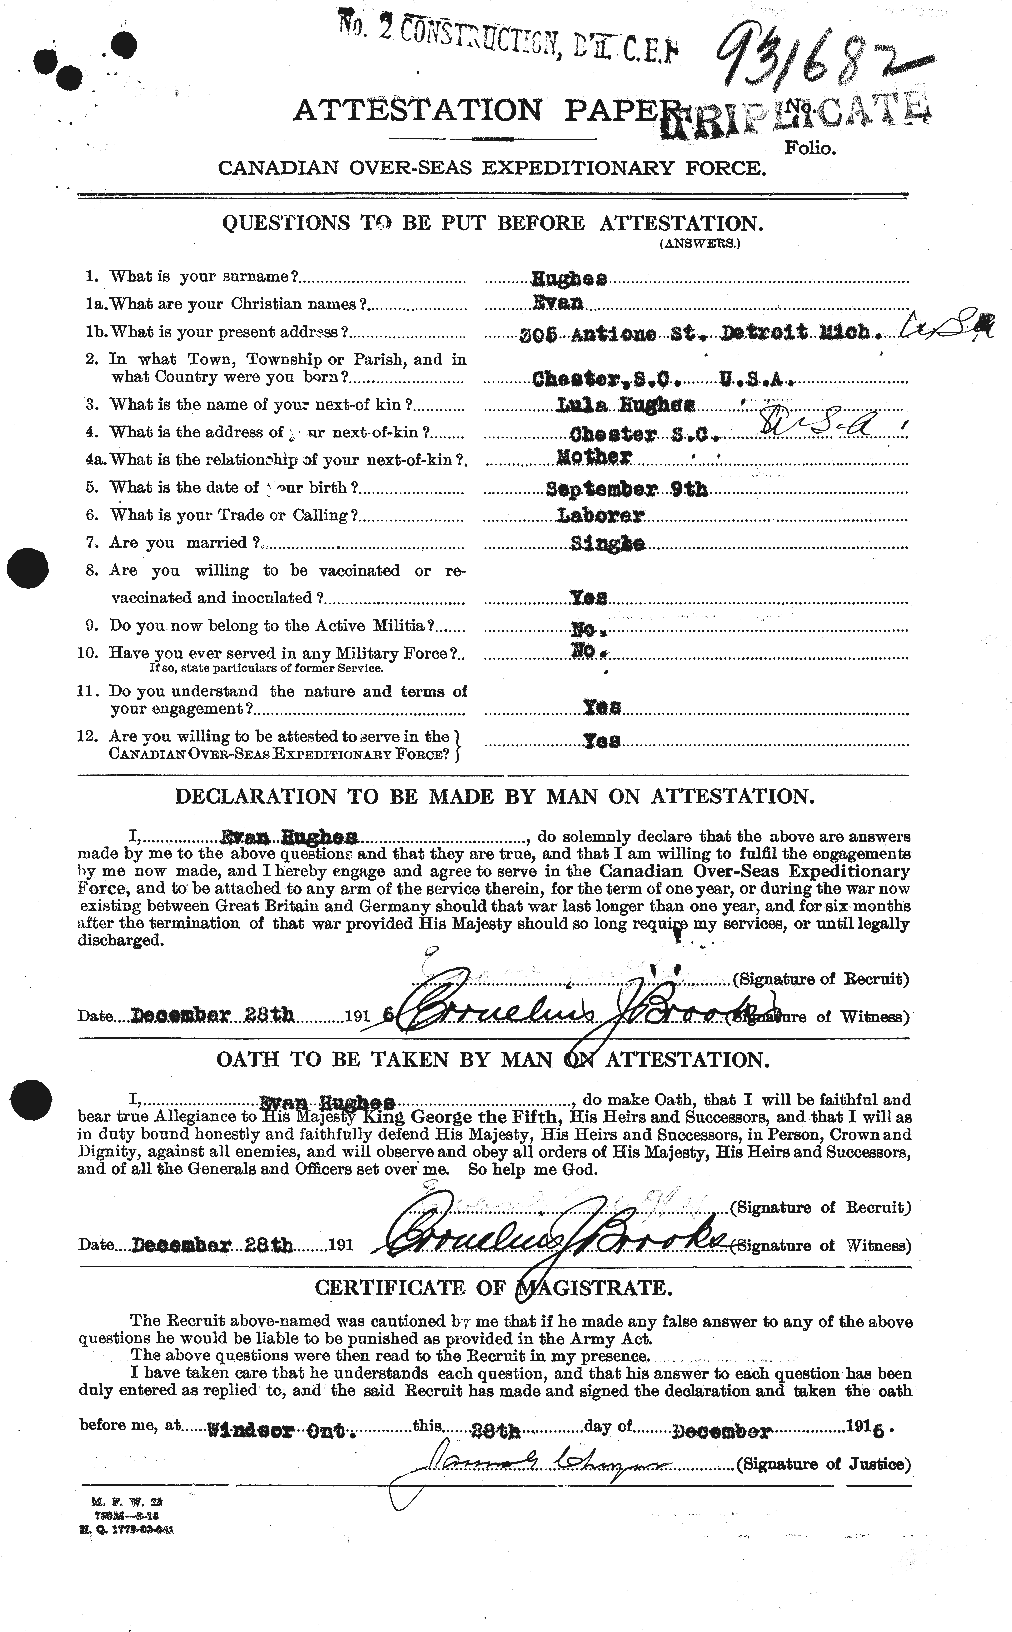 Dossiers du Personnel de la Première Guerre mondiale - CEC 403759a